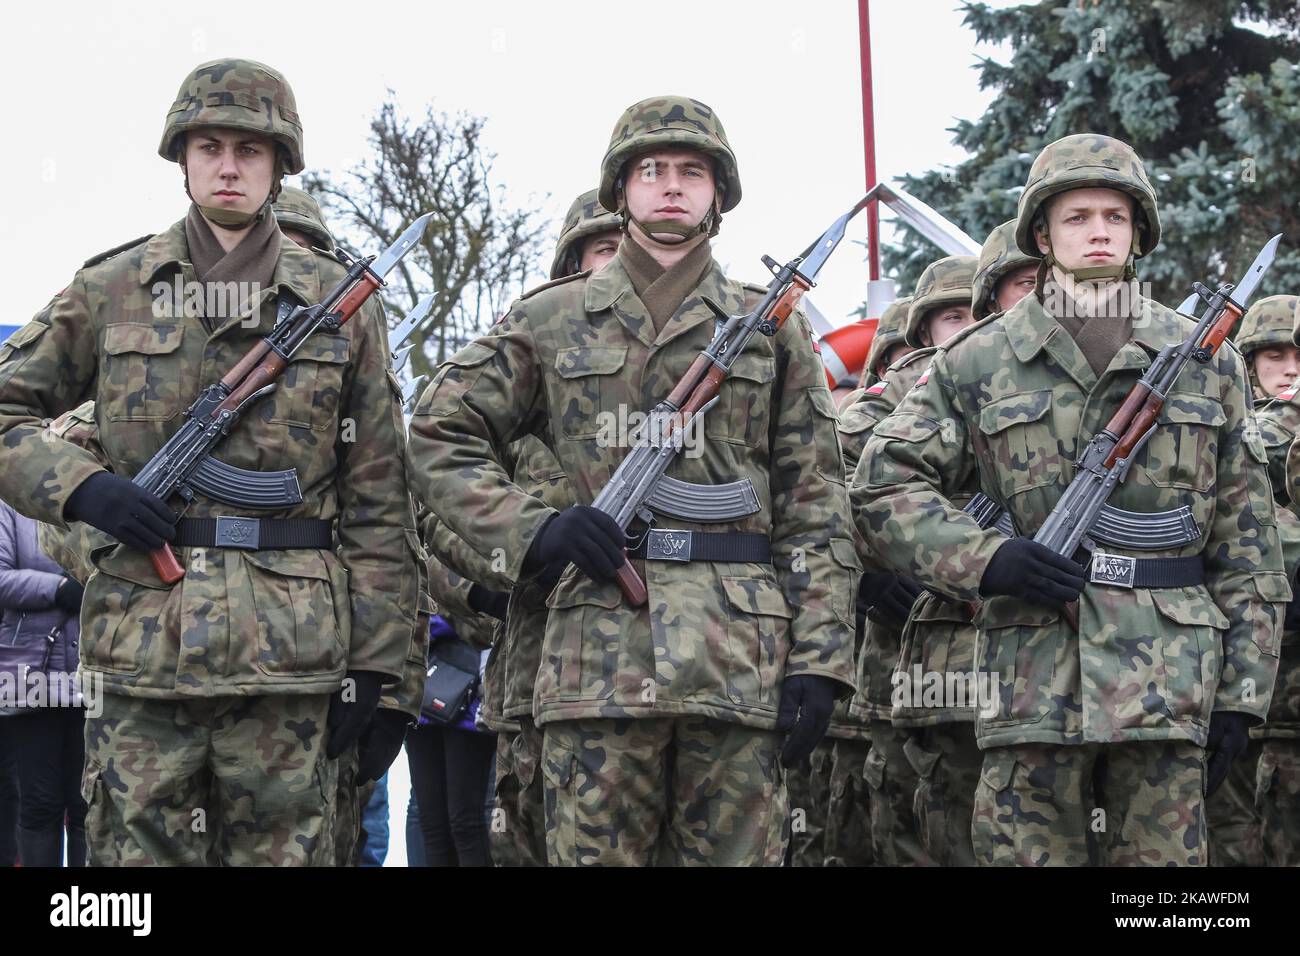 Kadetten in Uniformen mit AKMS 7,62 x 39 mm Sturmgewehren (Typ AK-47) sind am 9. Februar 2018 in Gdynia, Polen, zu sehen.Freiwillige, die nach einer Zeit des Lernens zum Bohren, zu militärischen Zeremonien und zur militärischen Disziplin in der Armee dienen, legten offiziell einen Militäreid ab und begannen eine Spezialausbildung. Auch die Familien neuer Soldaten nahmen an der Zeremonie Teil. (Foto von Michal Fludra/NurPhoto) Stockfoto